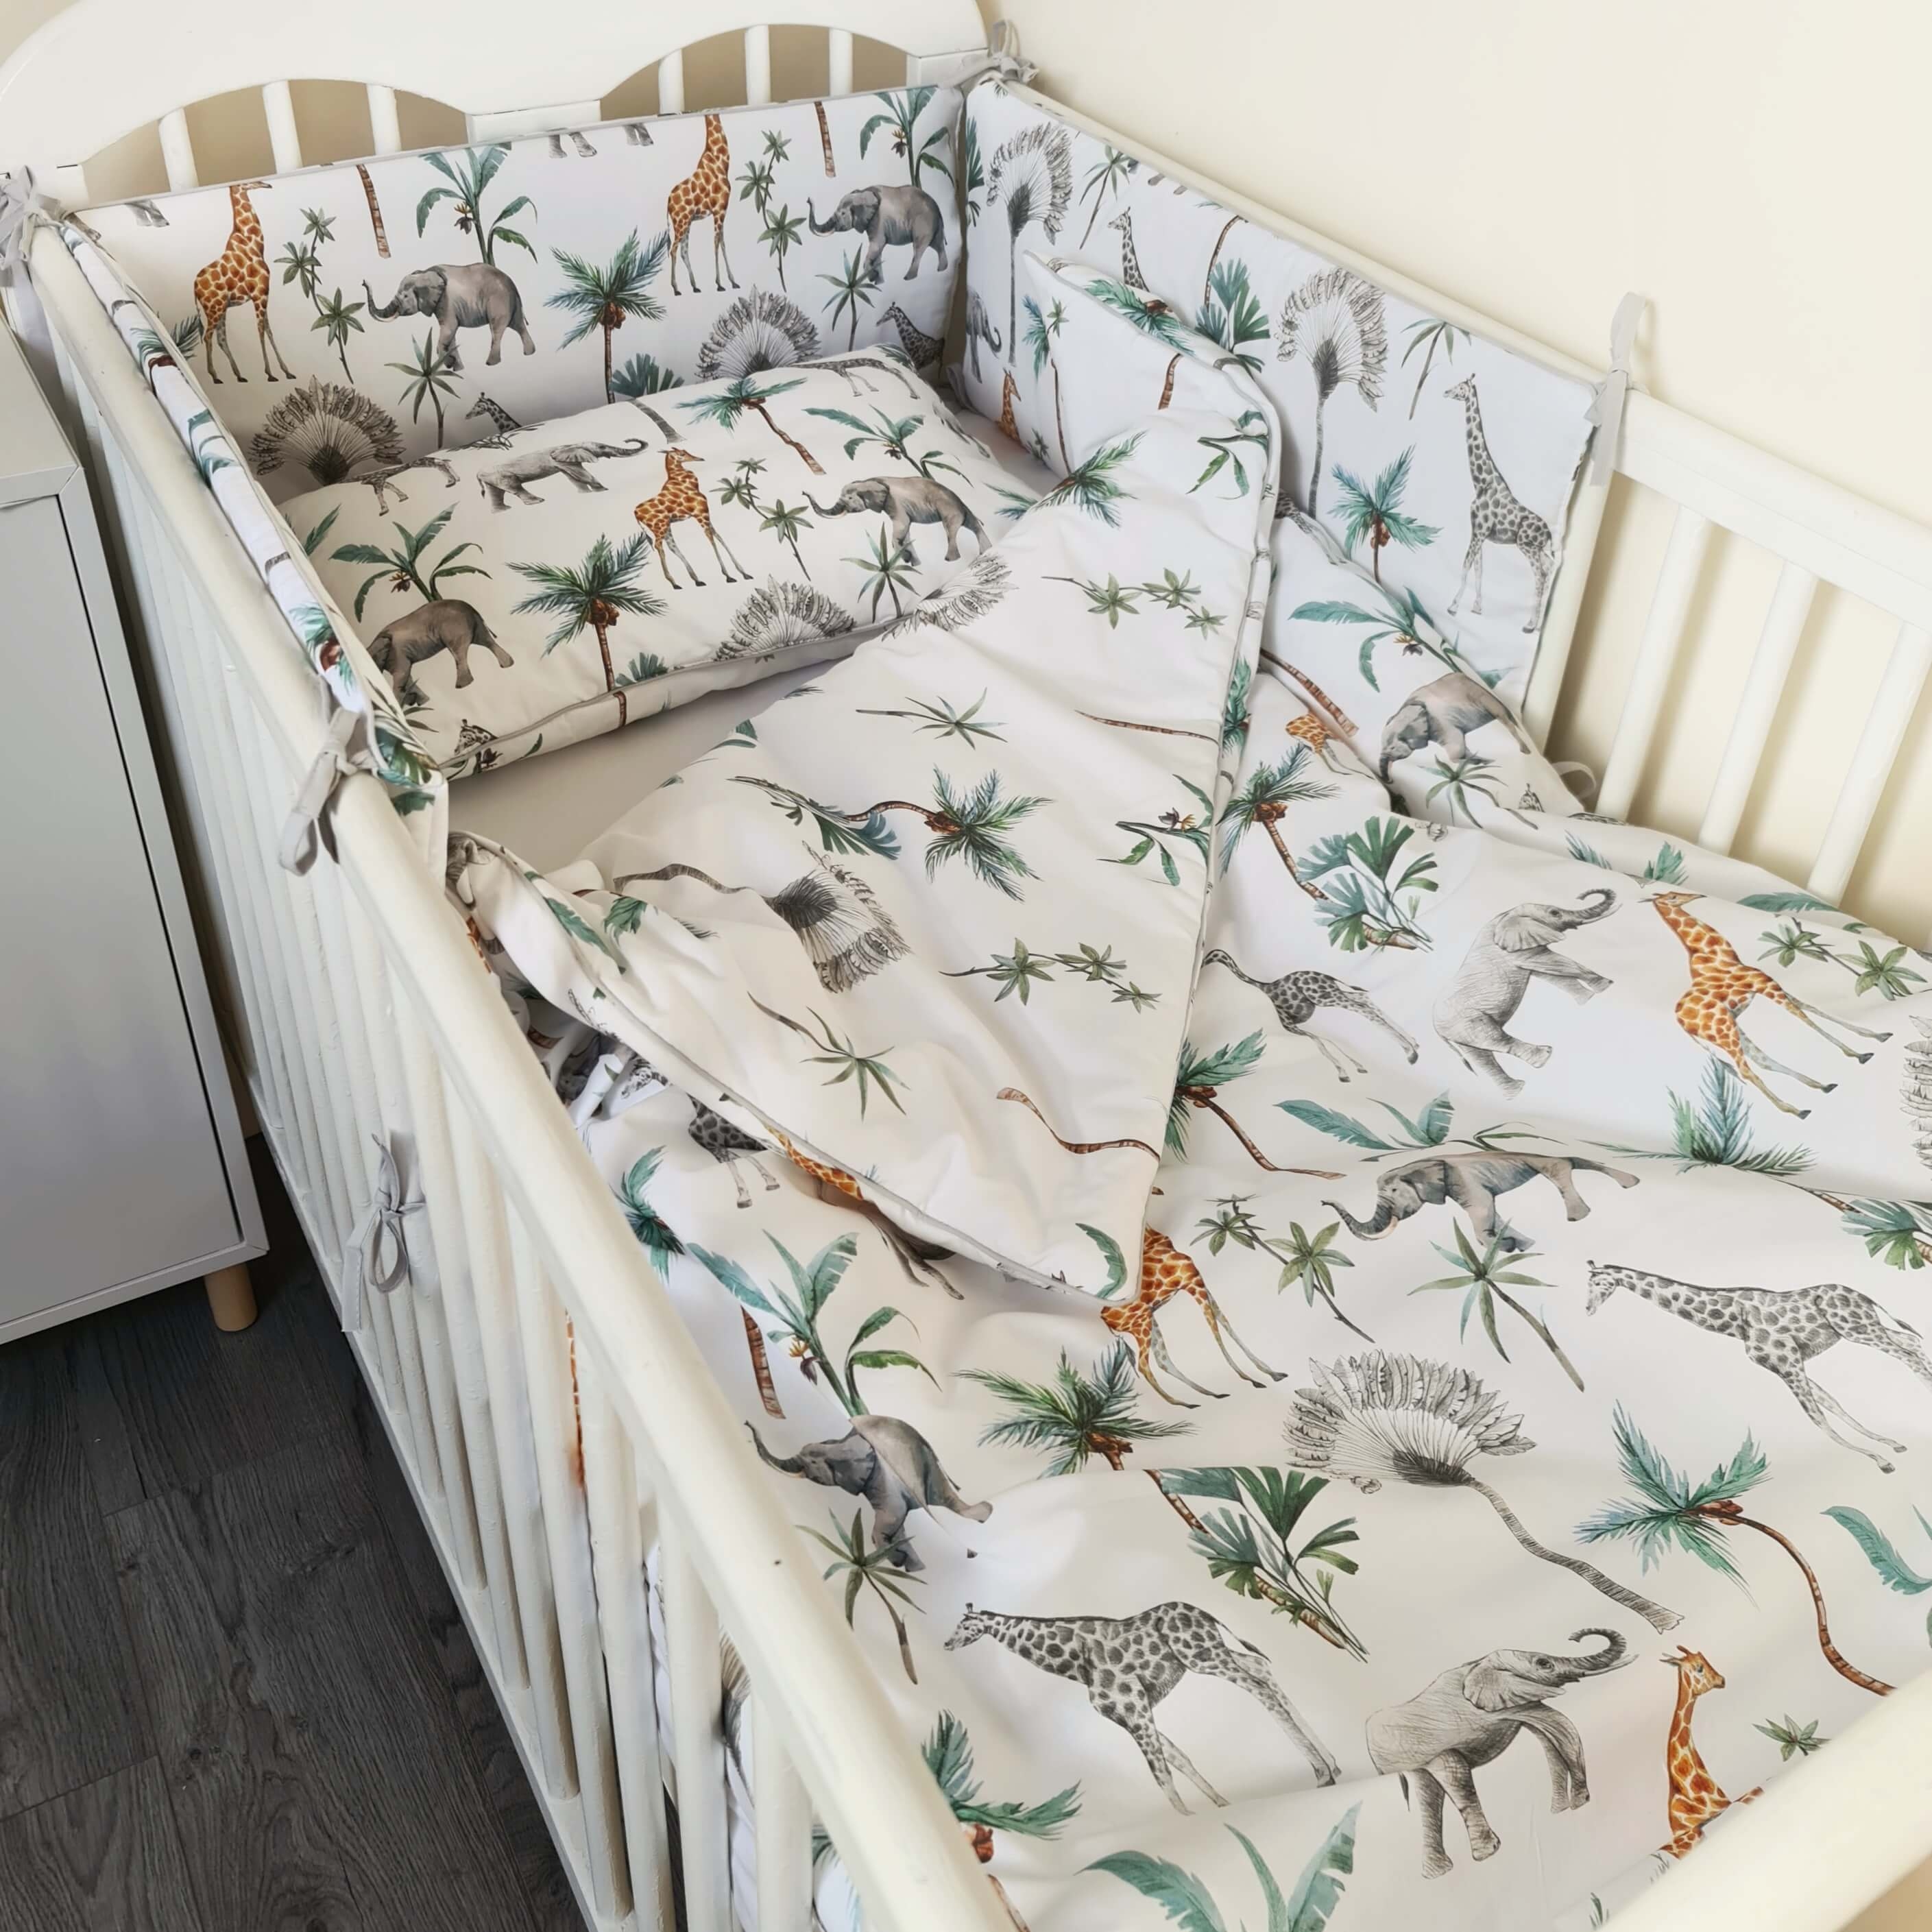 Toddler cot bed kit- 3 pc’s set duvet & pillow plus cot bed bumper- Safari & Palms